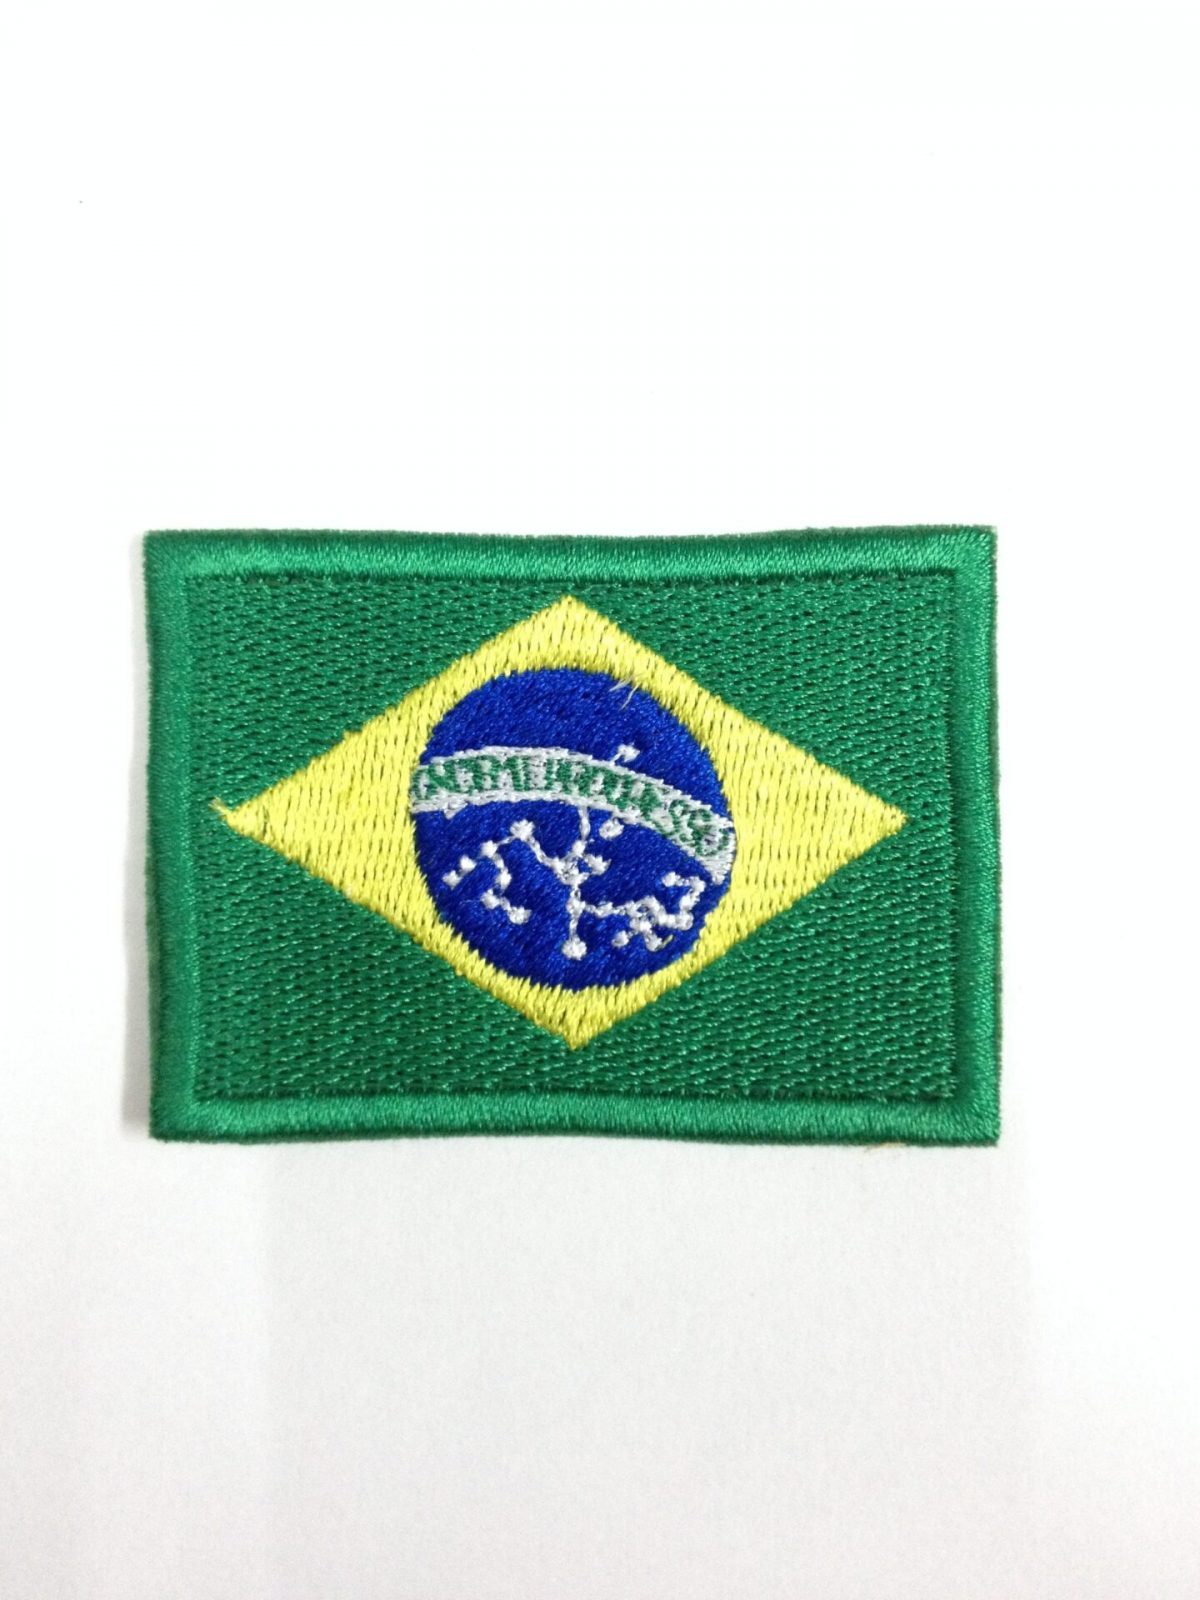 00387 bordado bandeira do brasil 1 - Couro Art Bombeiro Civil, Saúde e Tático